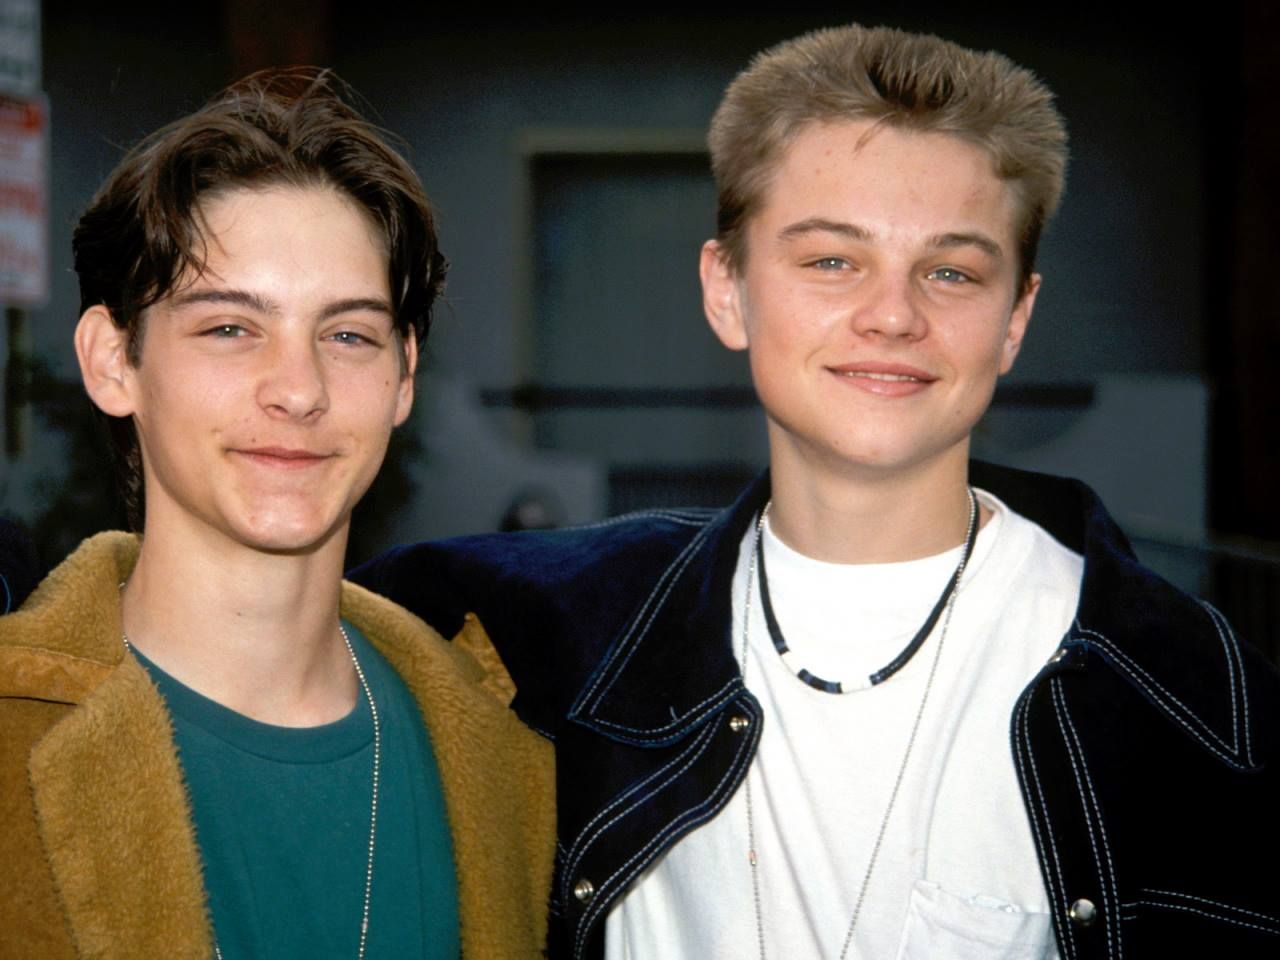 Tình bạn giữa Tobey Maguire và tài tử Leonardo Dicaprio nảy nở từ khi hai người còn nhỏ